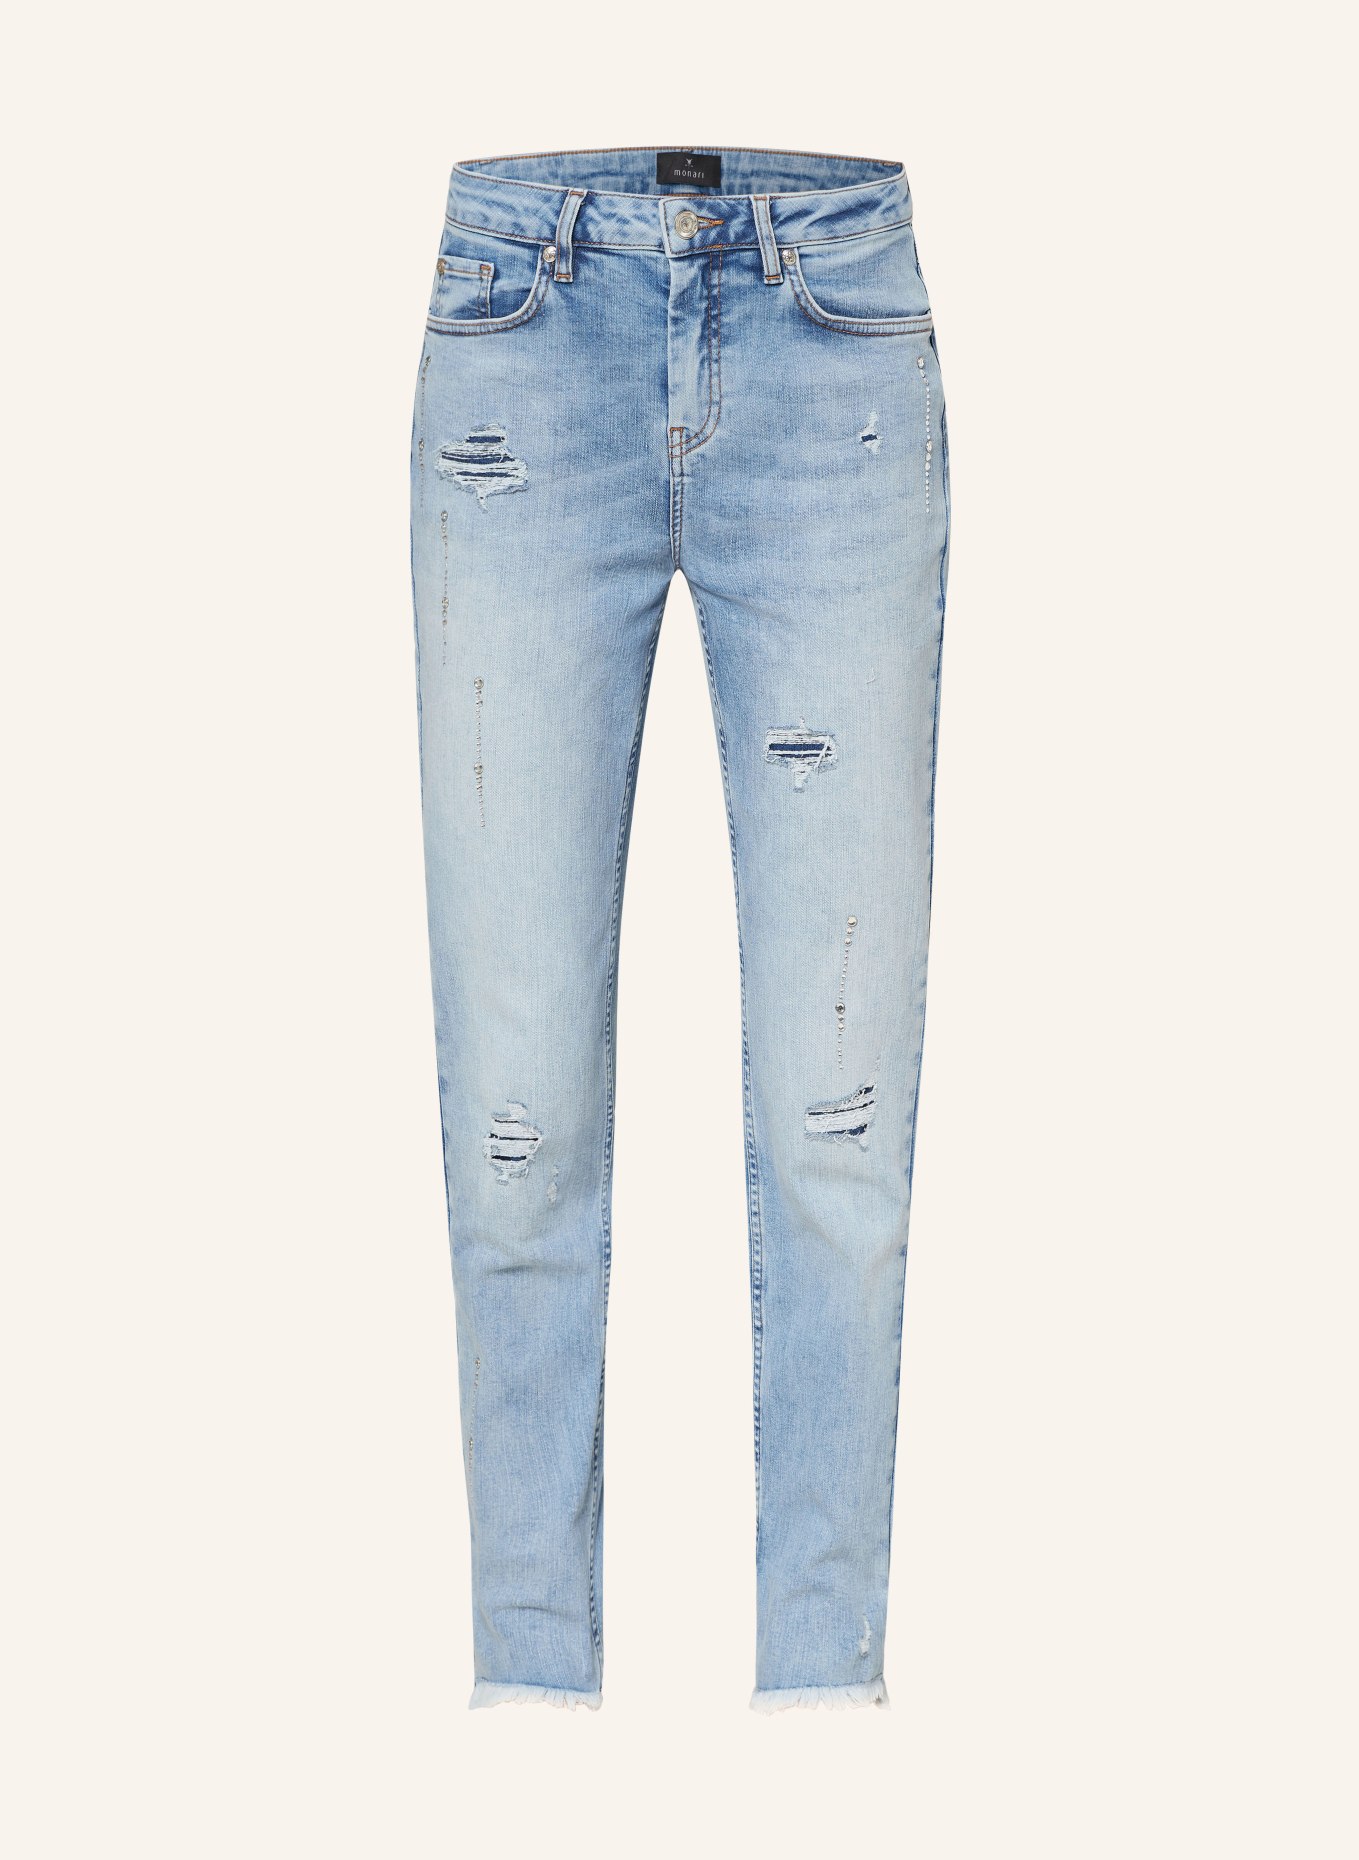 monari Jeans mit Schmucksteinen, Farbe: 750 jeans (Bild 1)